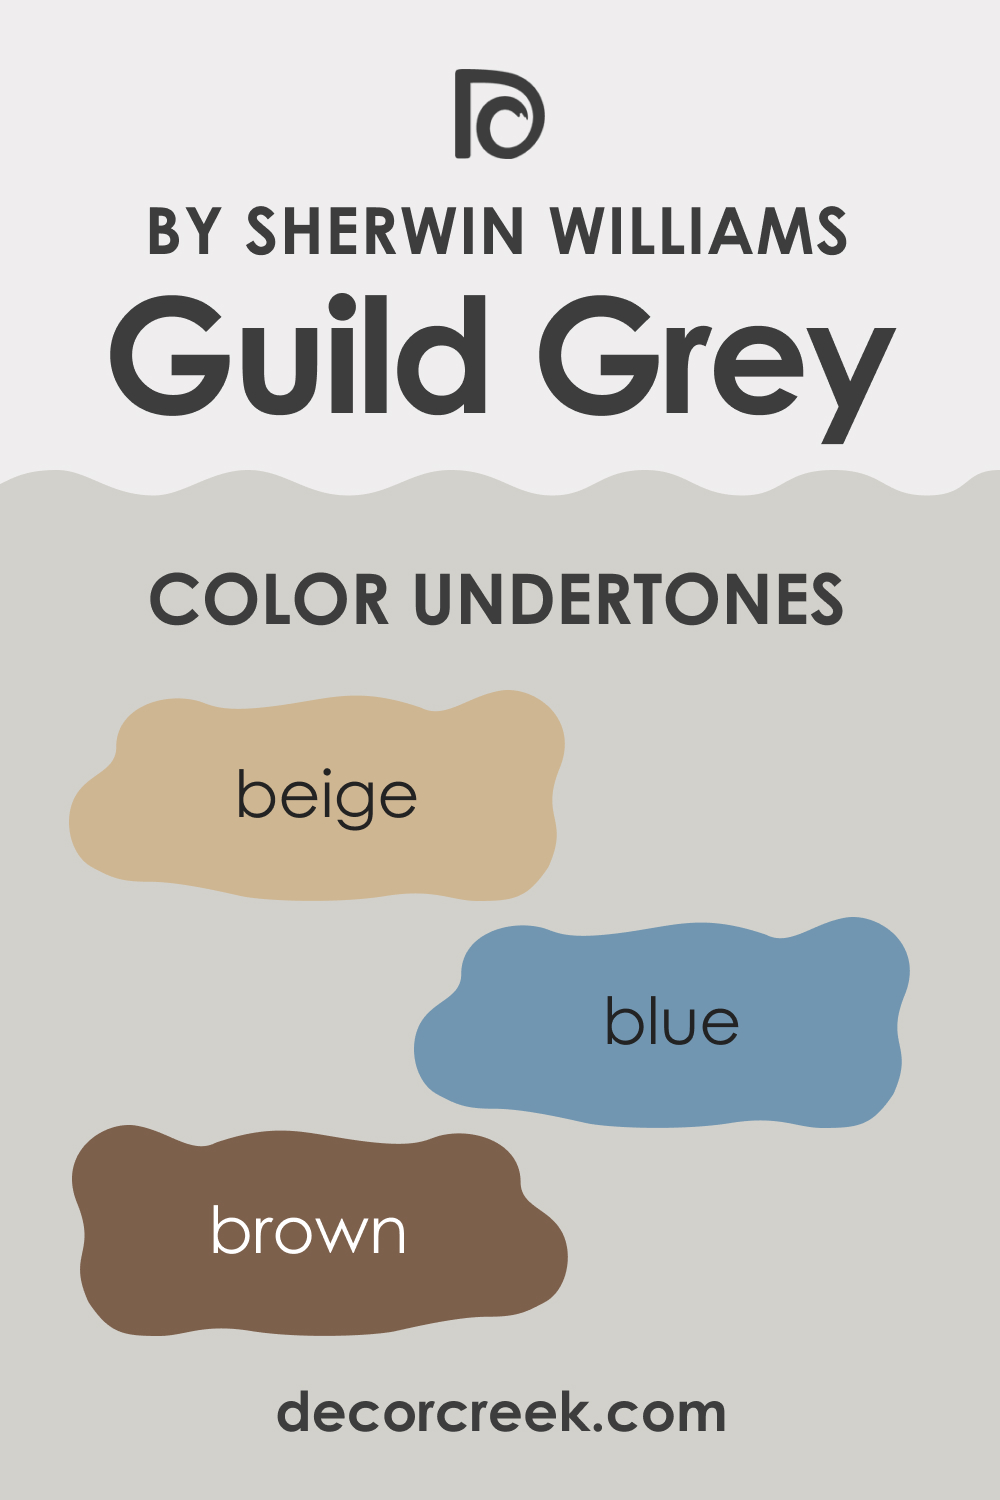 Undertones of SW 9561 Guild Grey